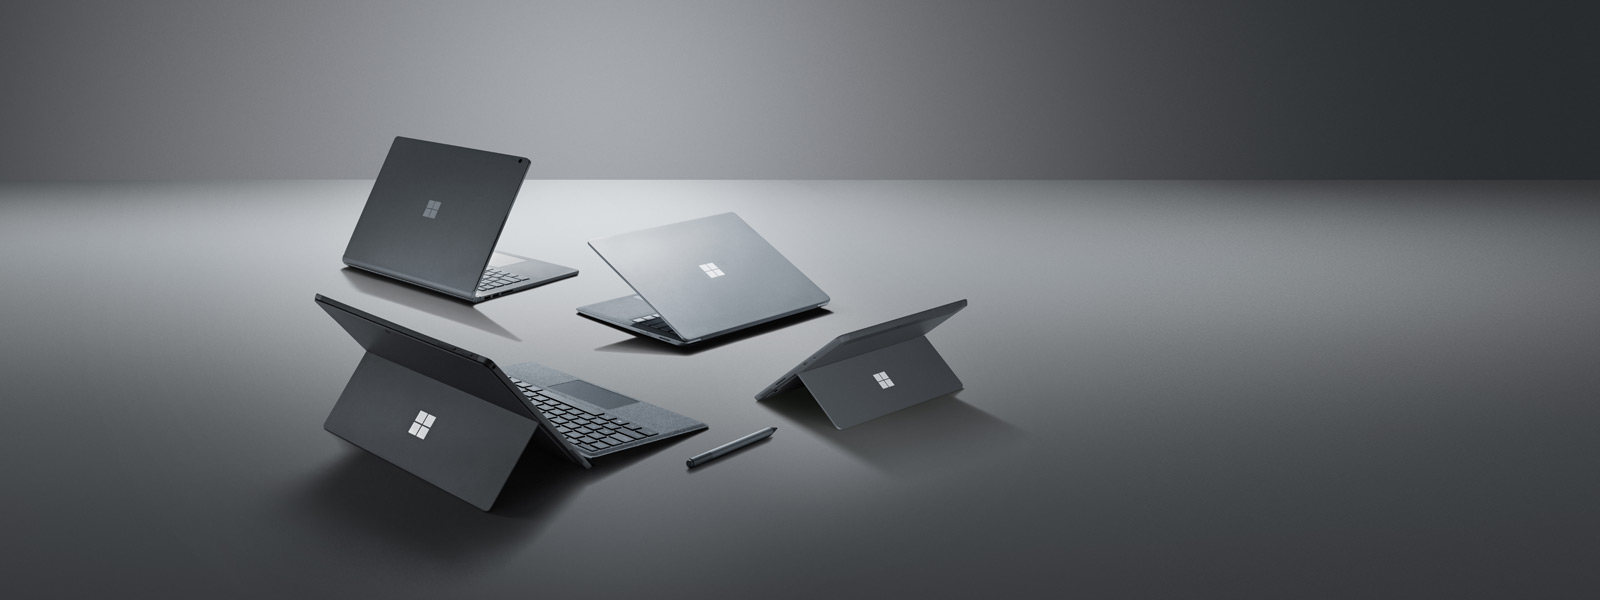 Surface-Produkt-Familie mit Surface Pen